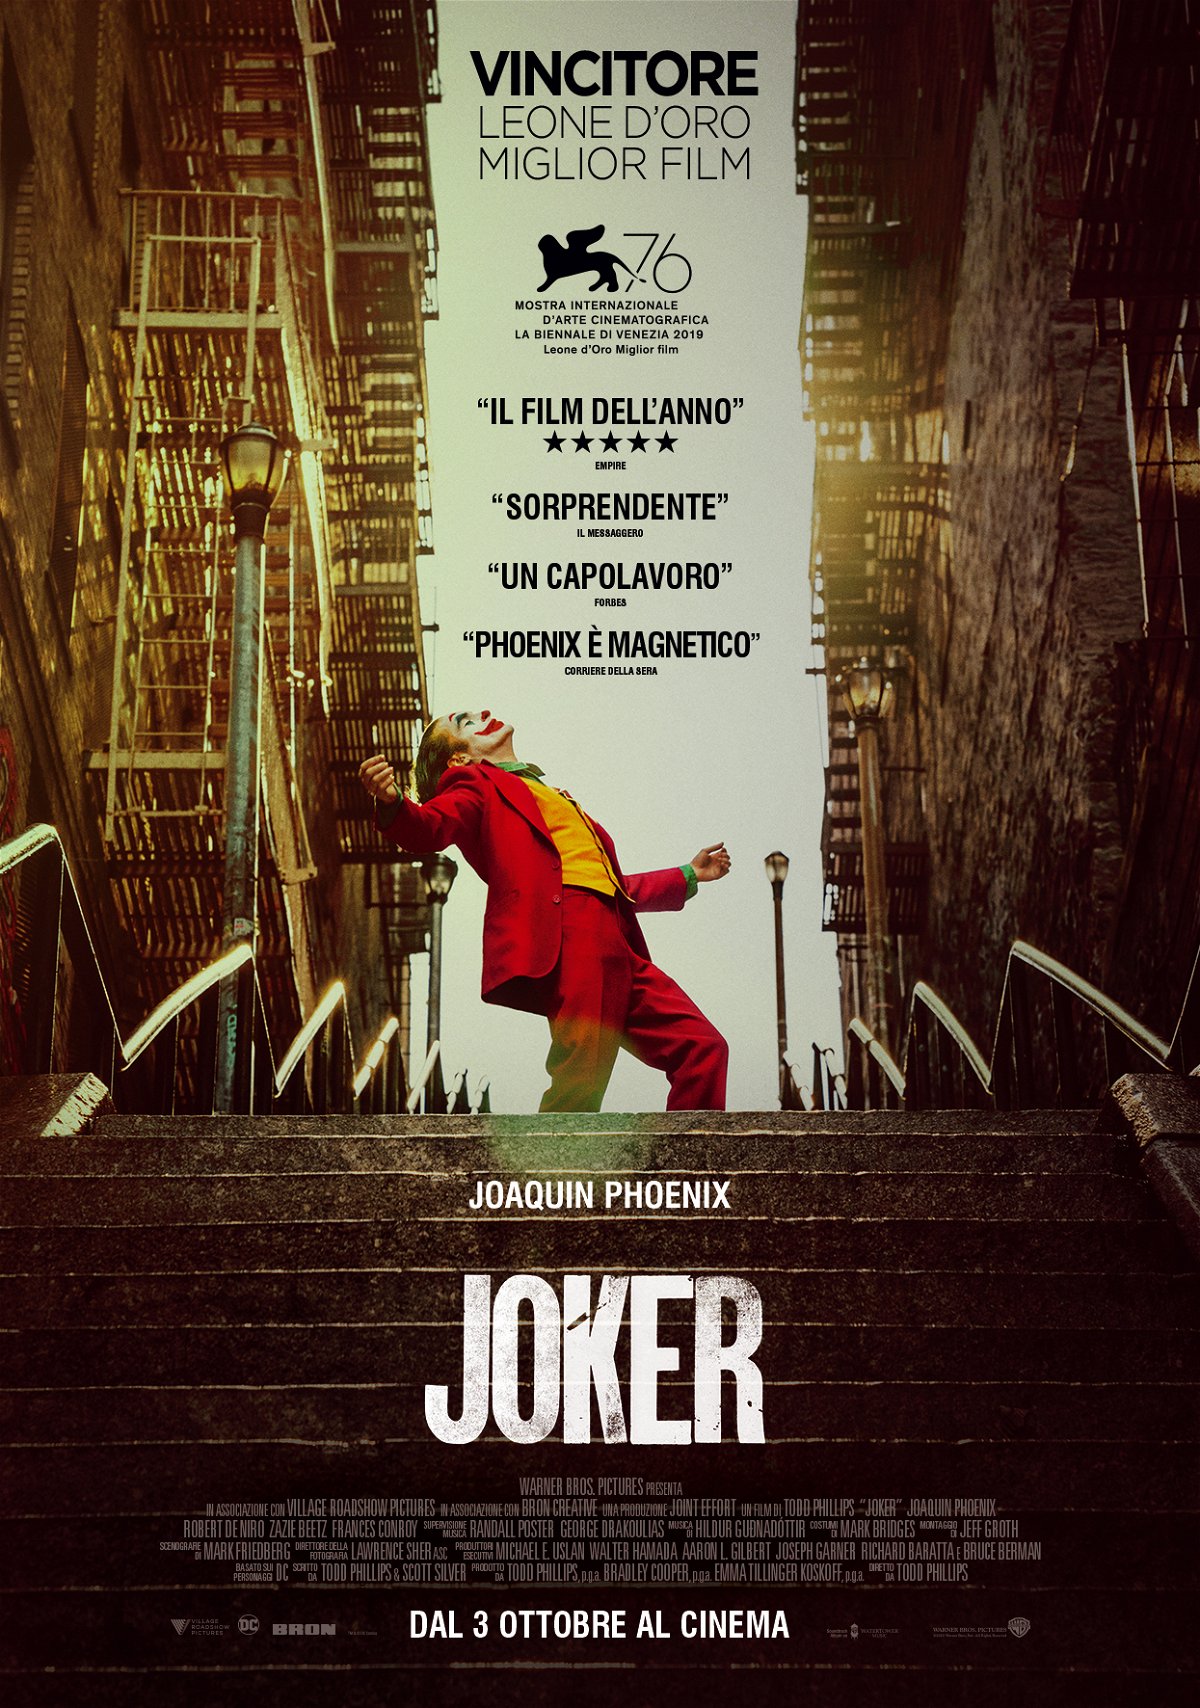 Poster italiano di Joker con citazioni di recensioni